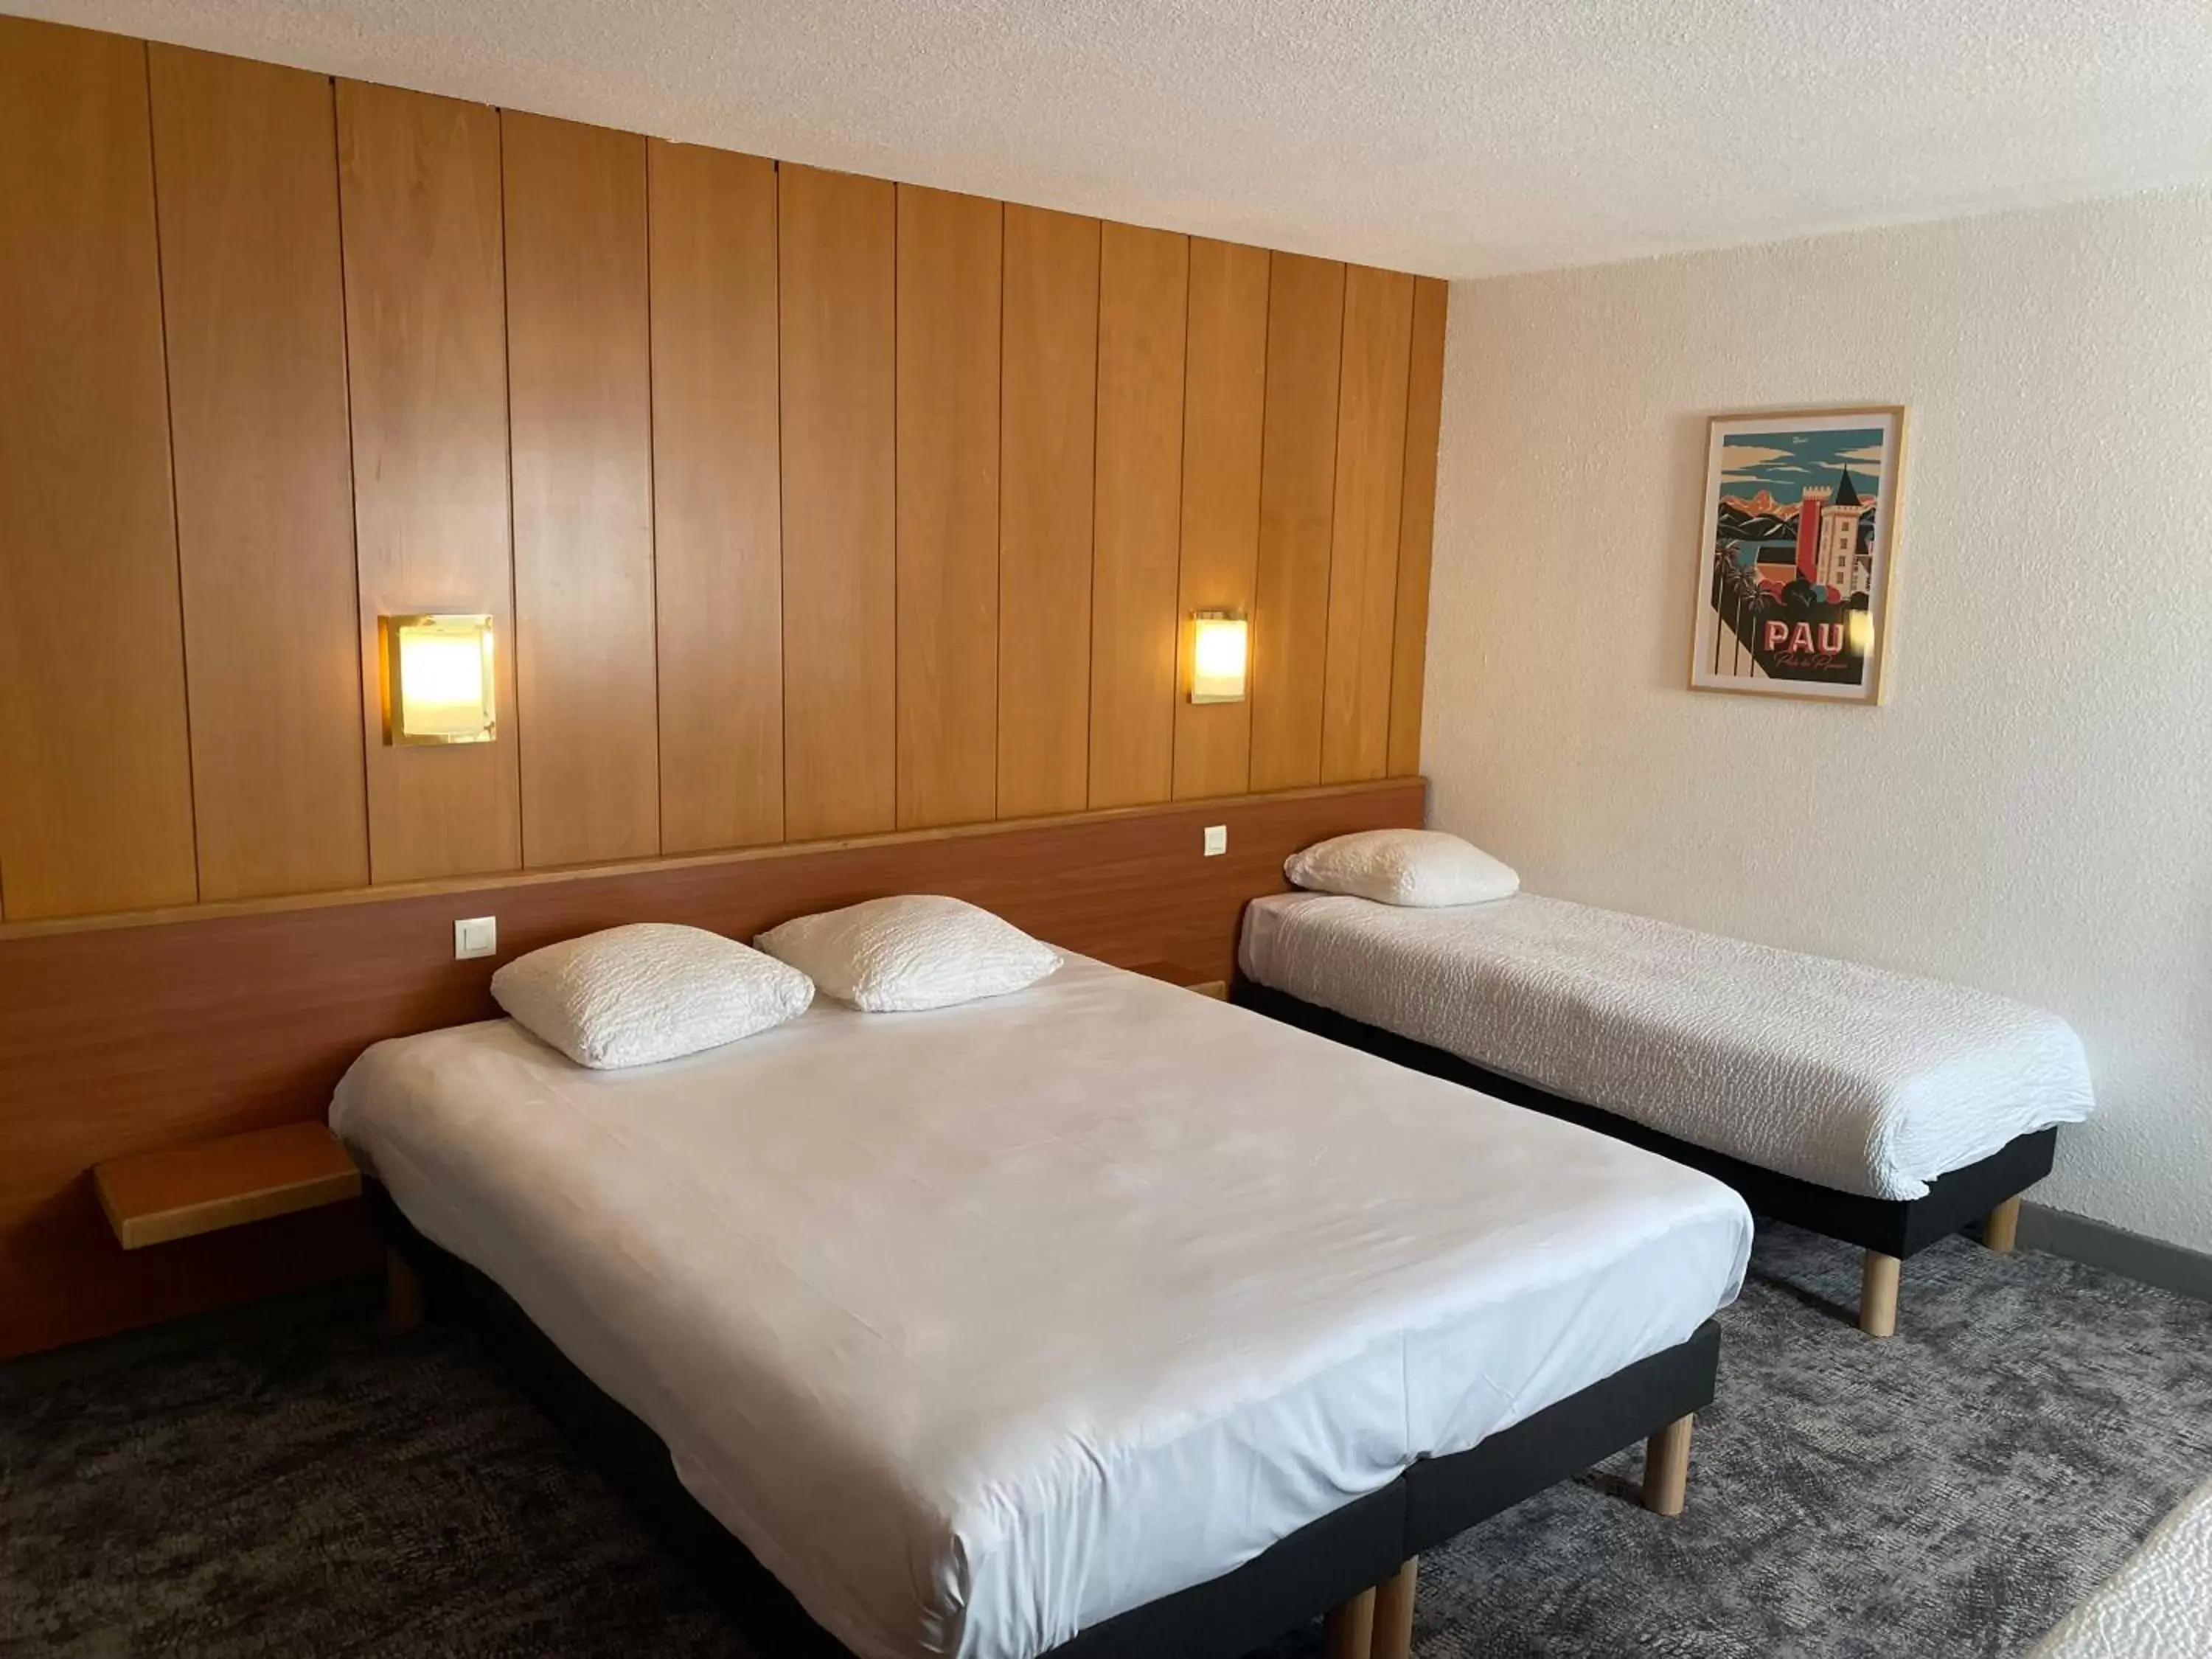 Bed in Ostal Hotel Pau Universite